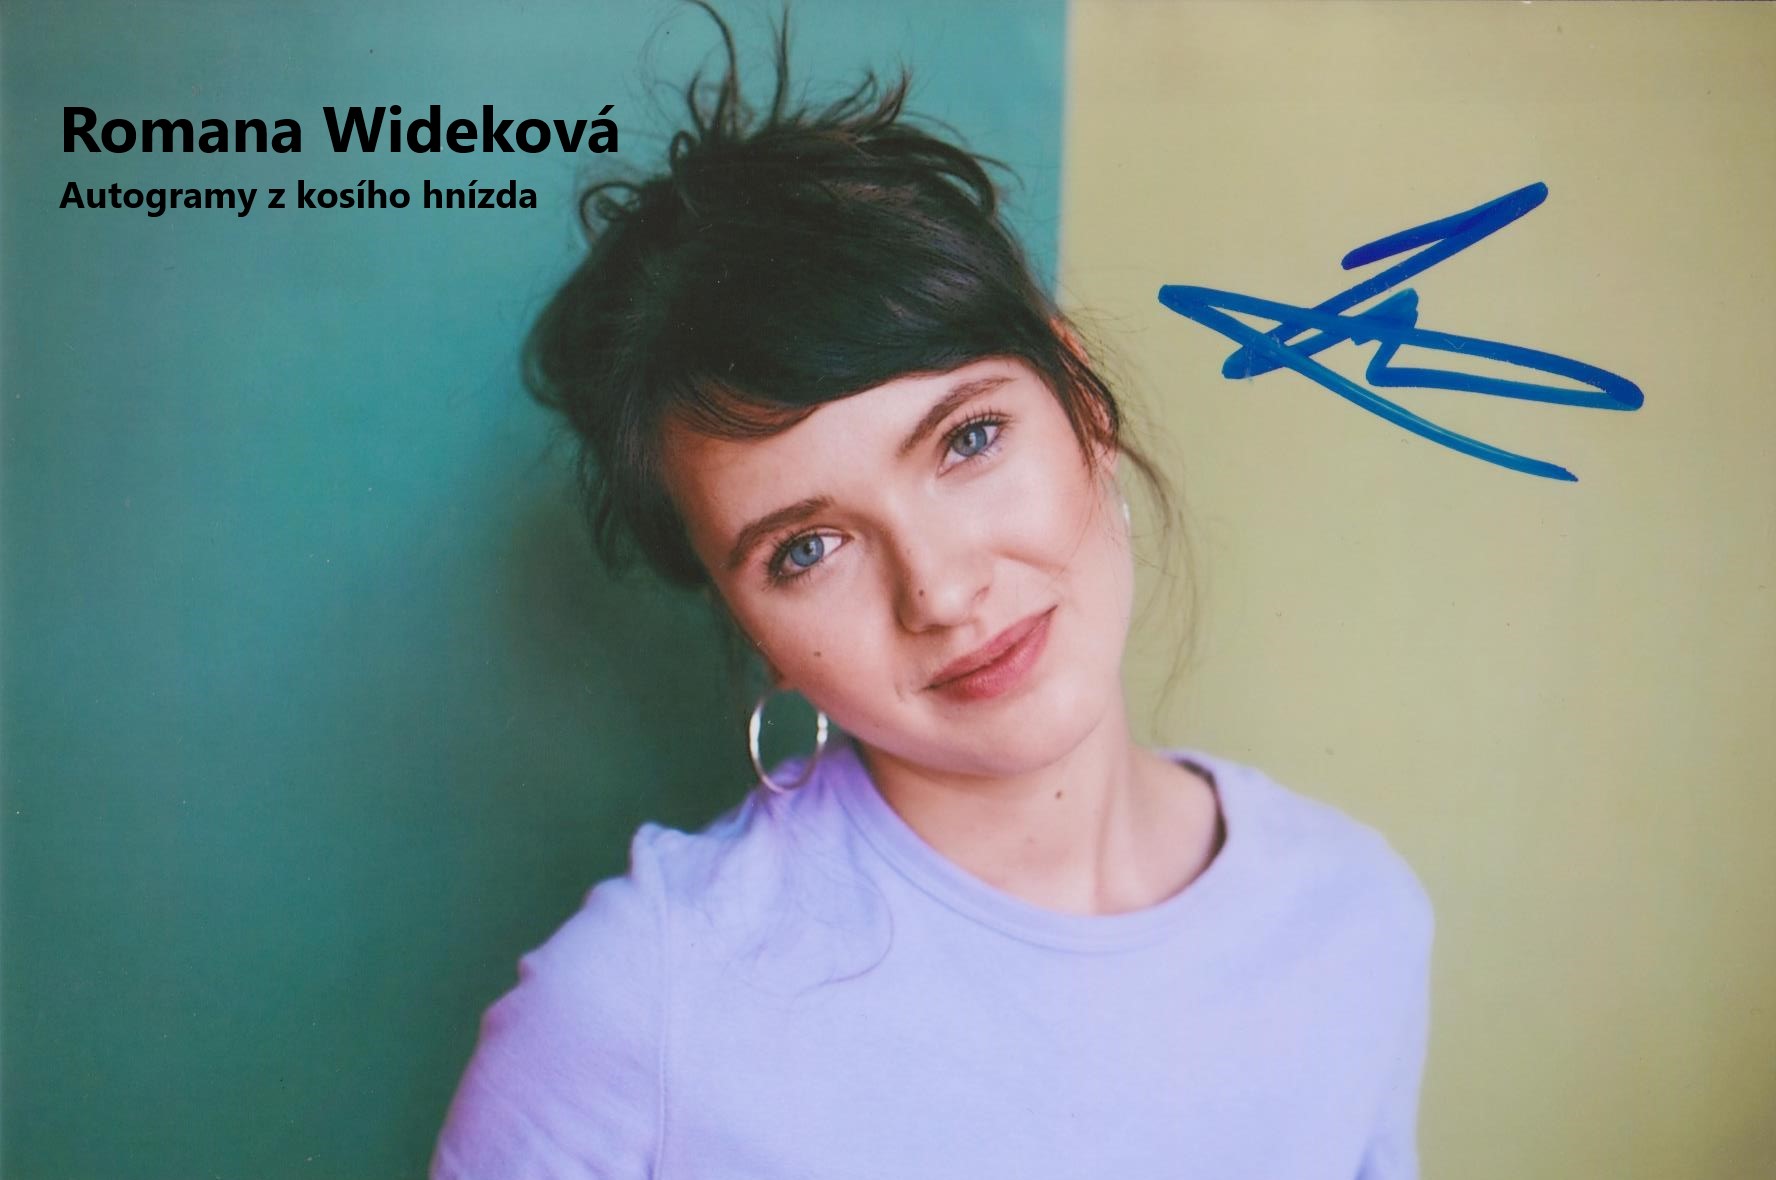 Wideková